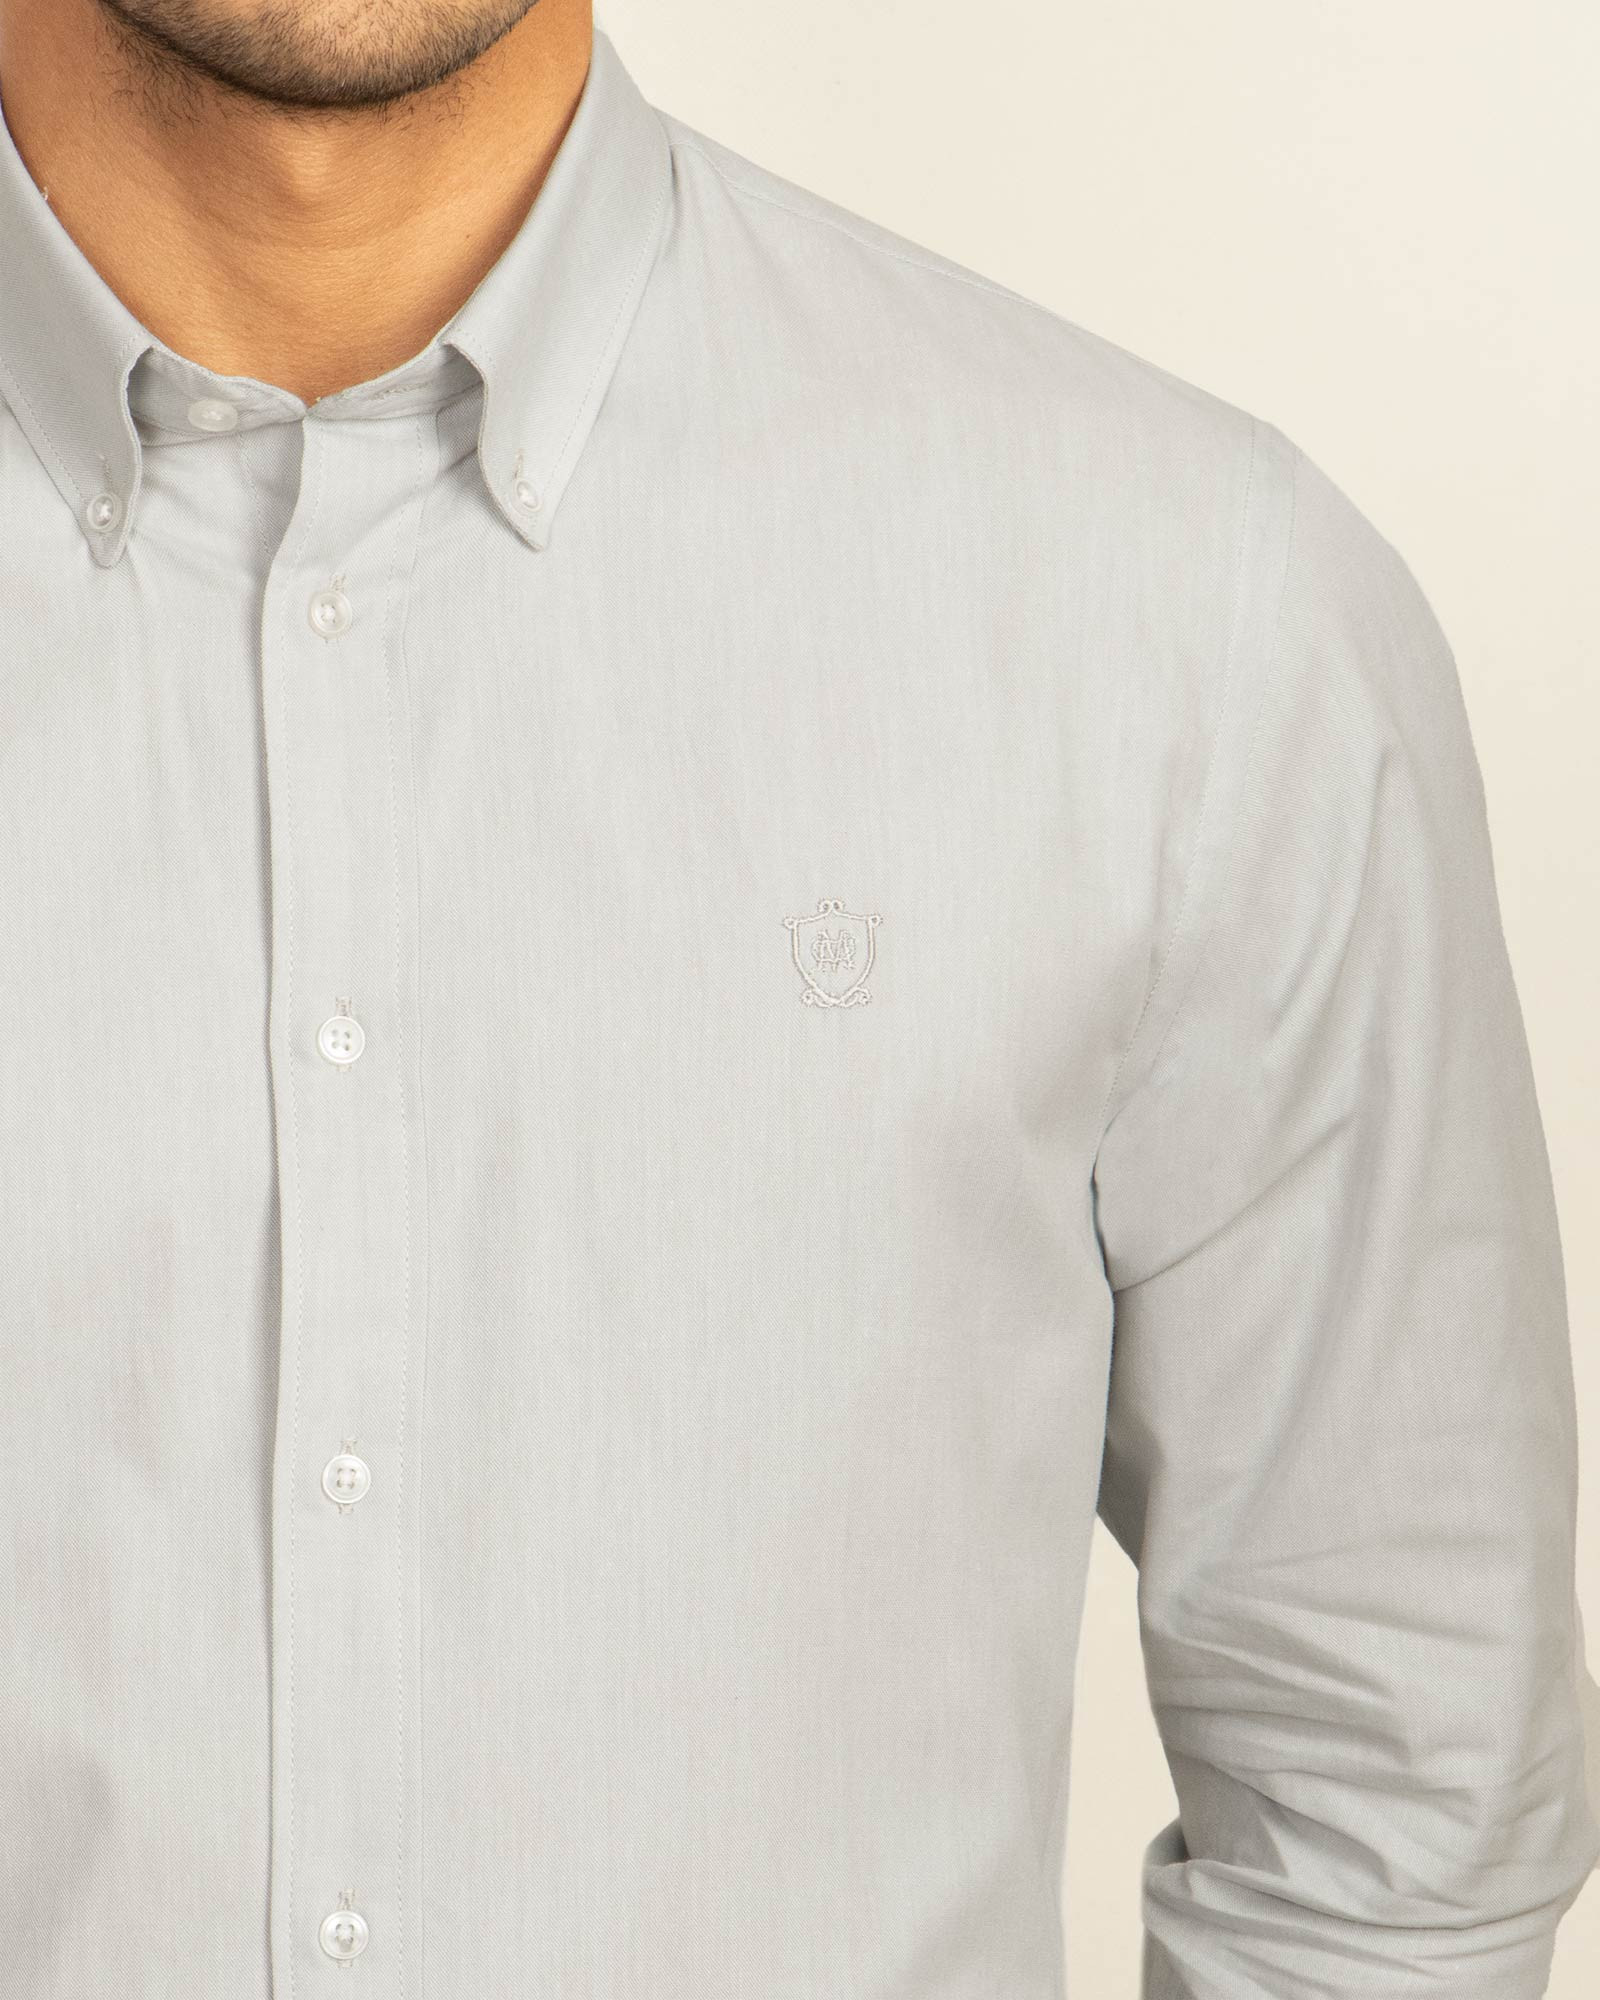 پیراهن شیک مردانه سفیدخاکستری روشن  19421190